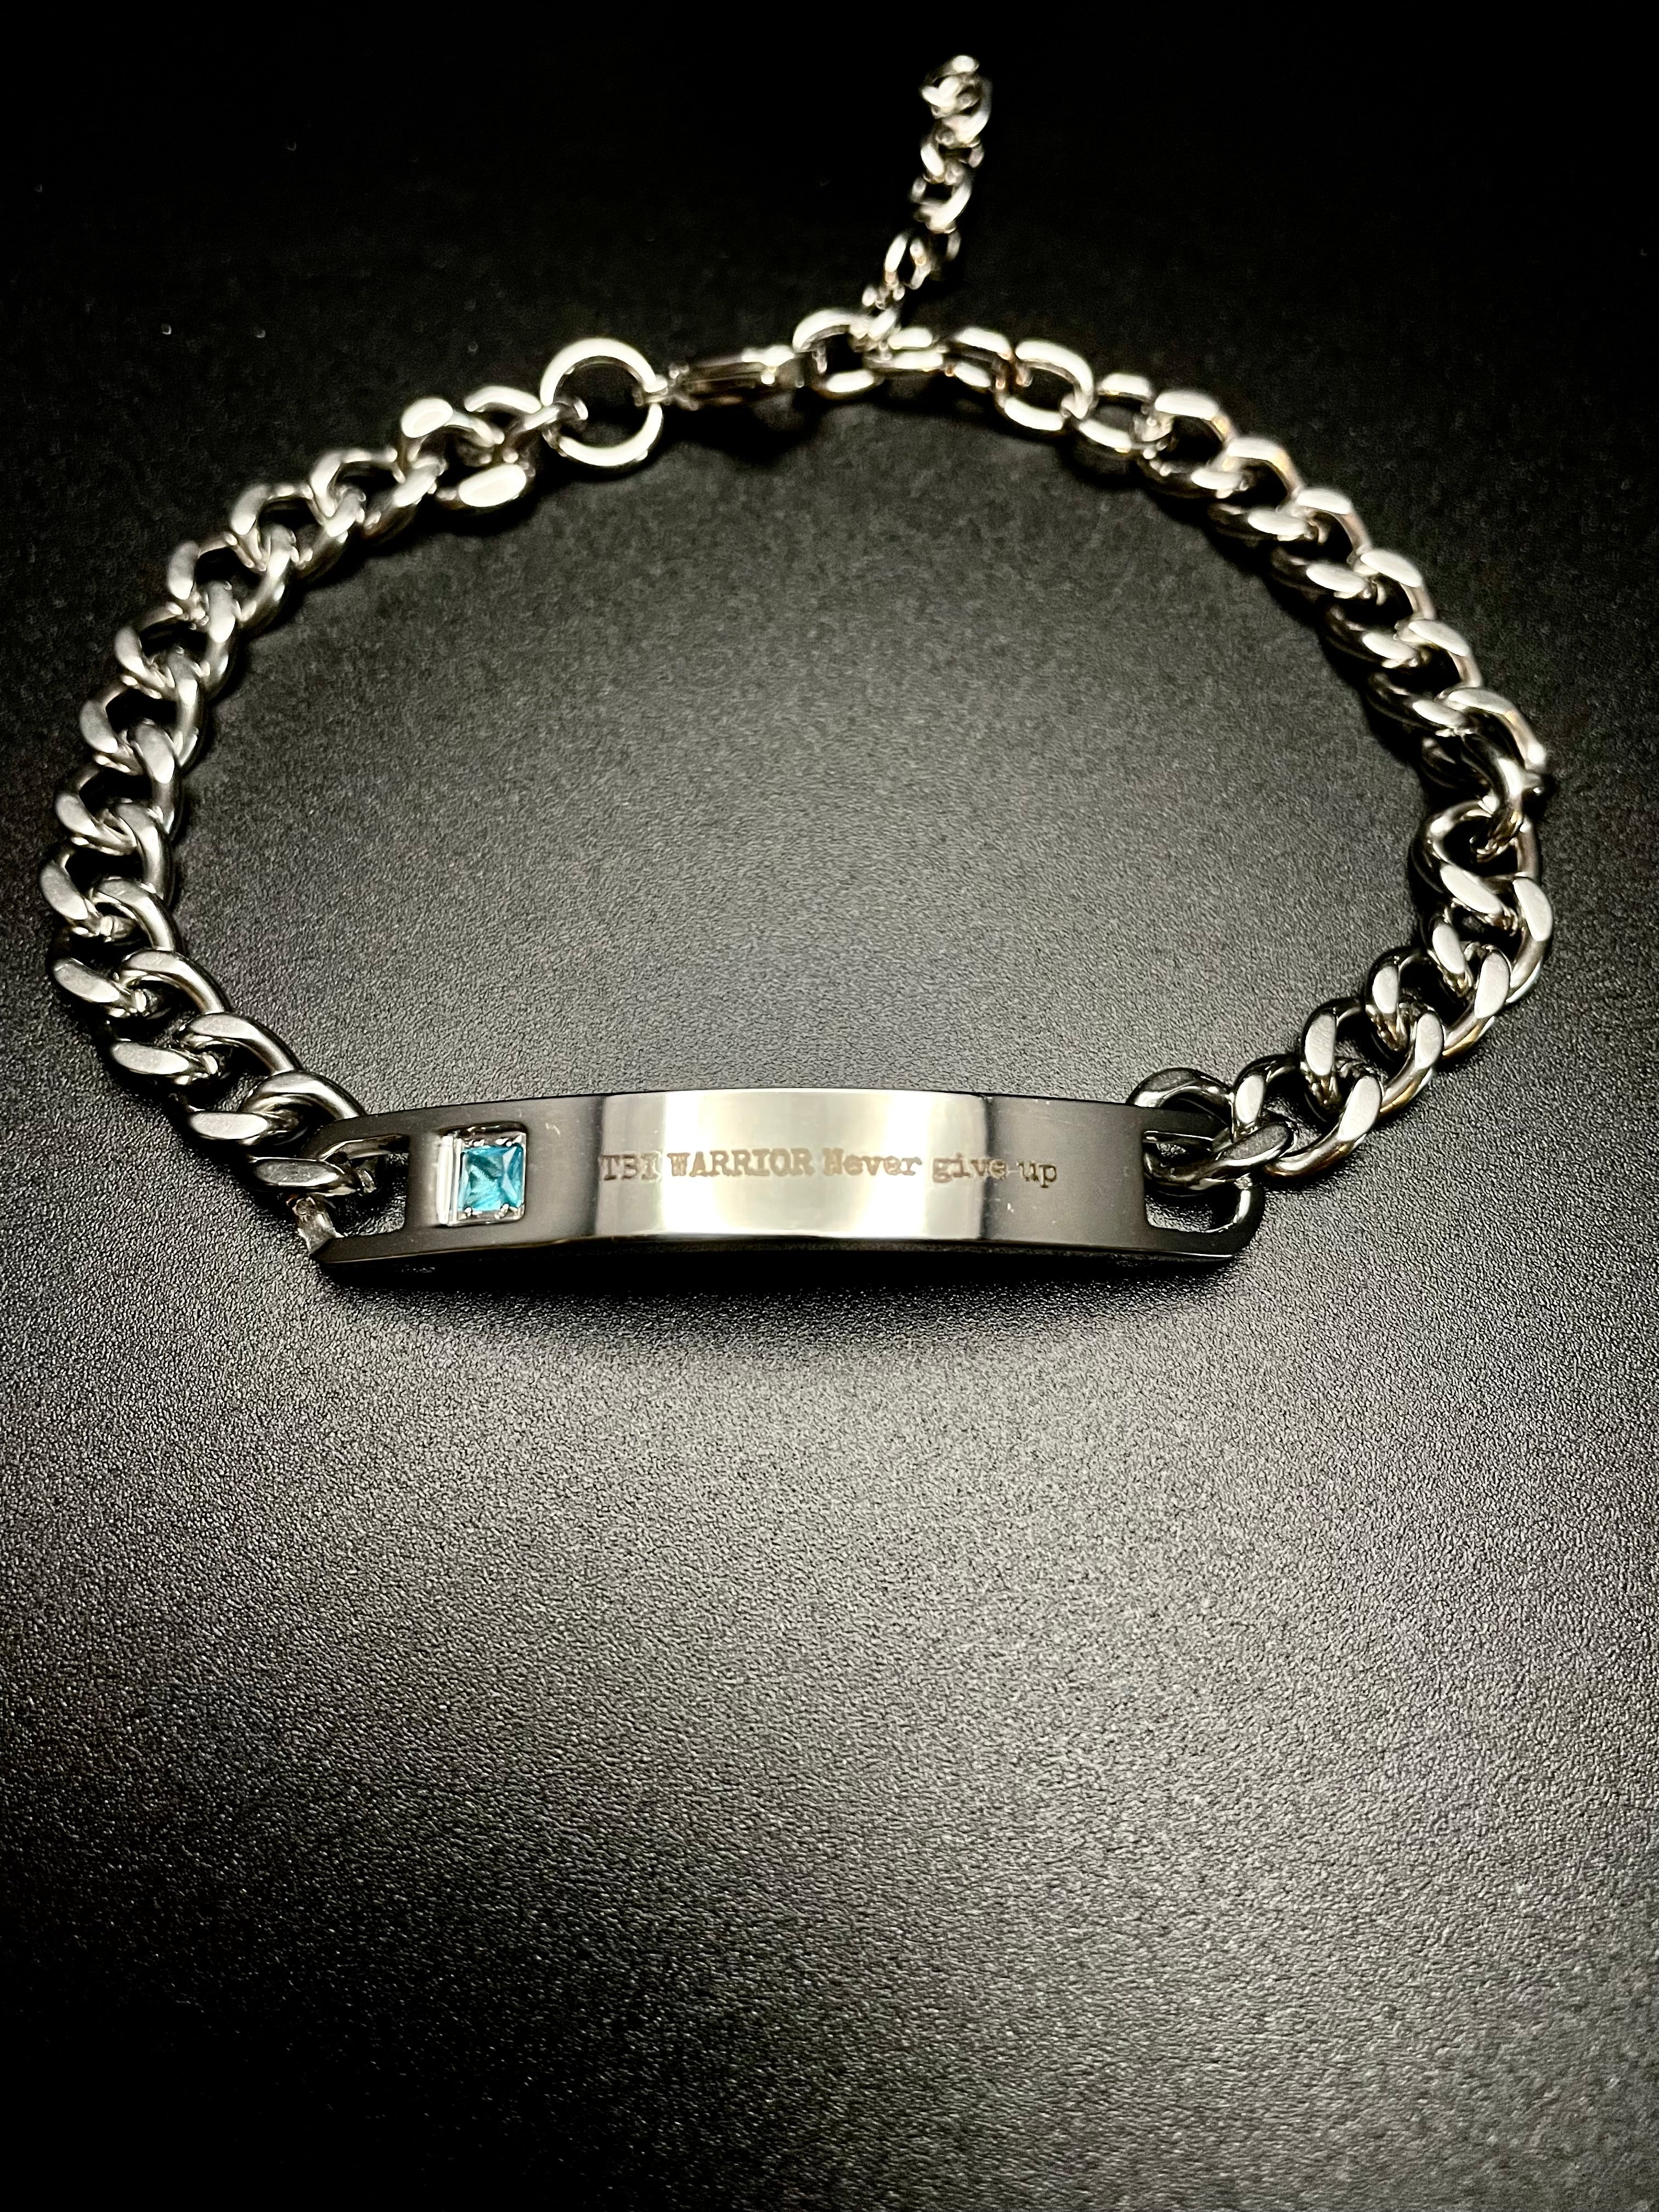 Custom TBI WARRIOR Chain Bracelet with Blue Stone